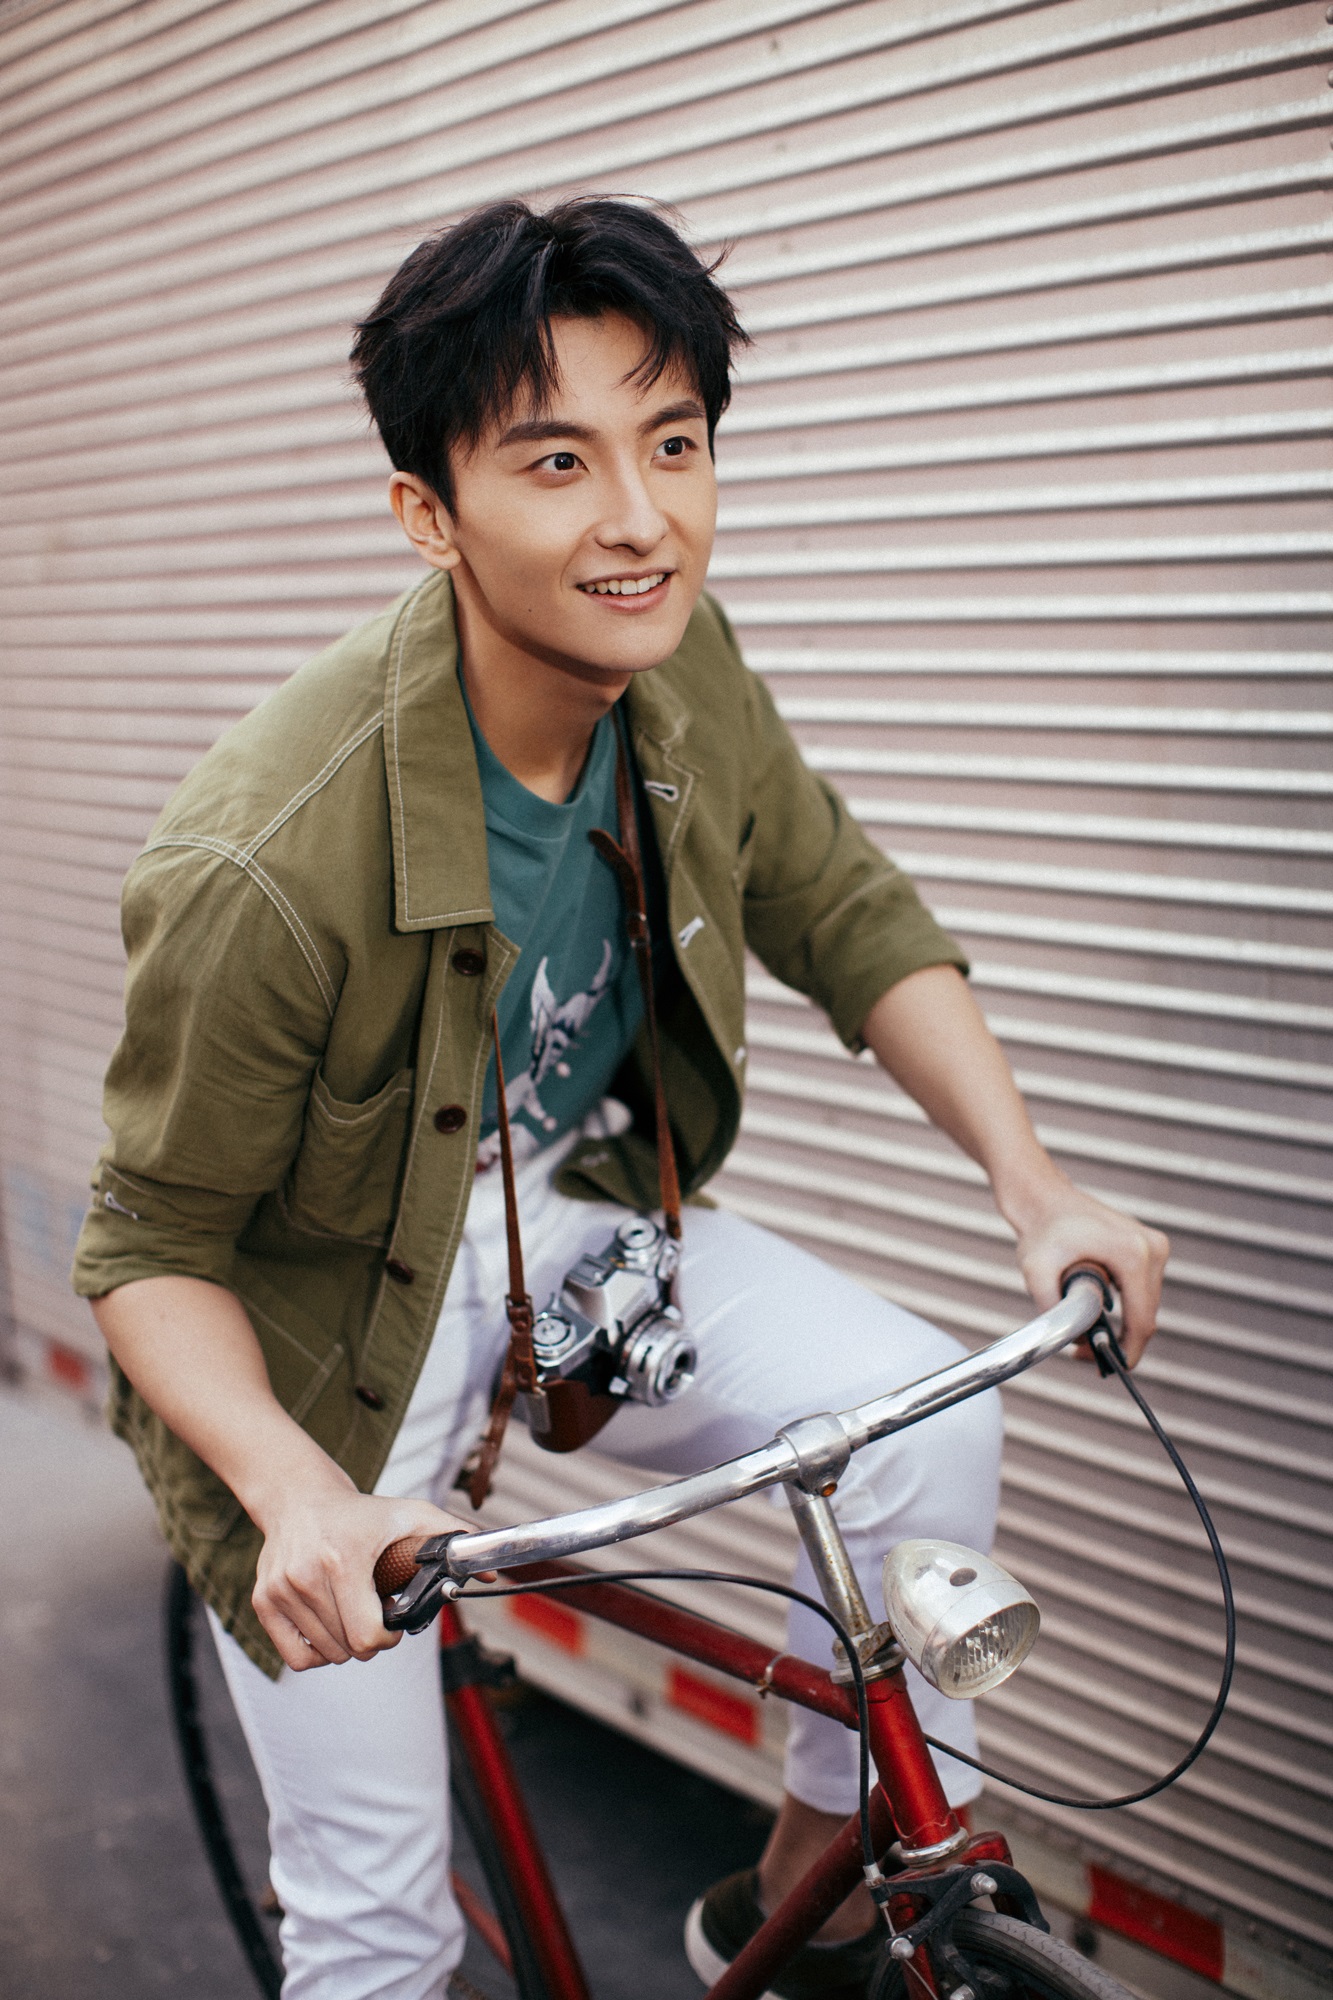 牛骏峰写真来袭展青春活力单车少年干净阳光